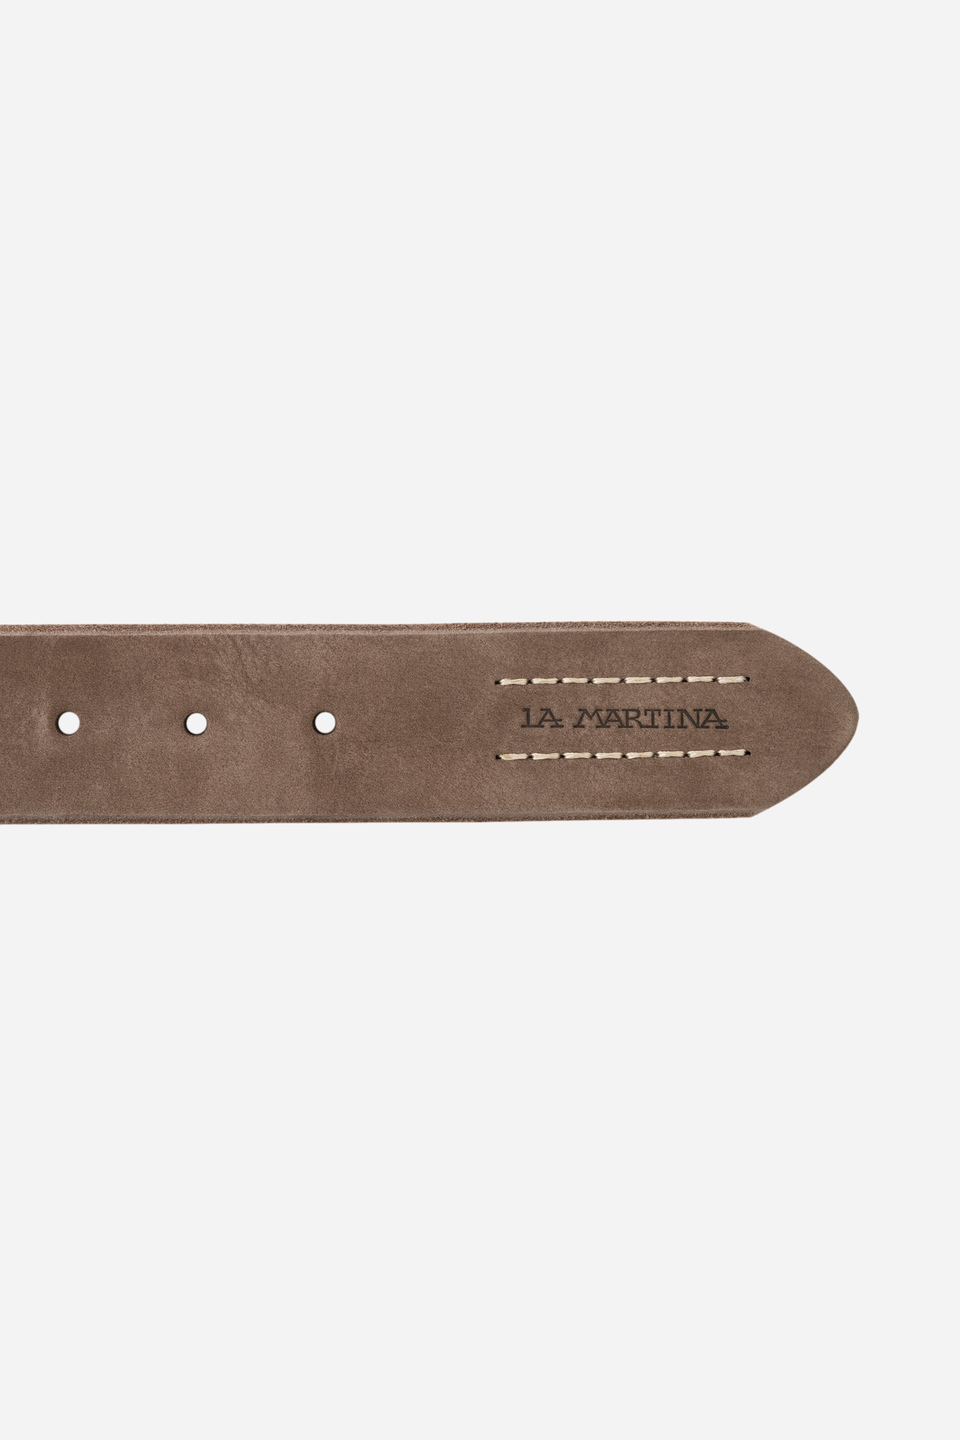 Brown leather belt | La Martina - Official Online Shop